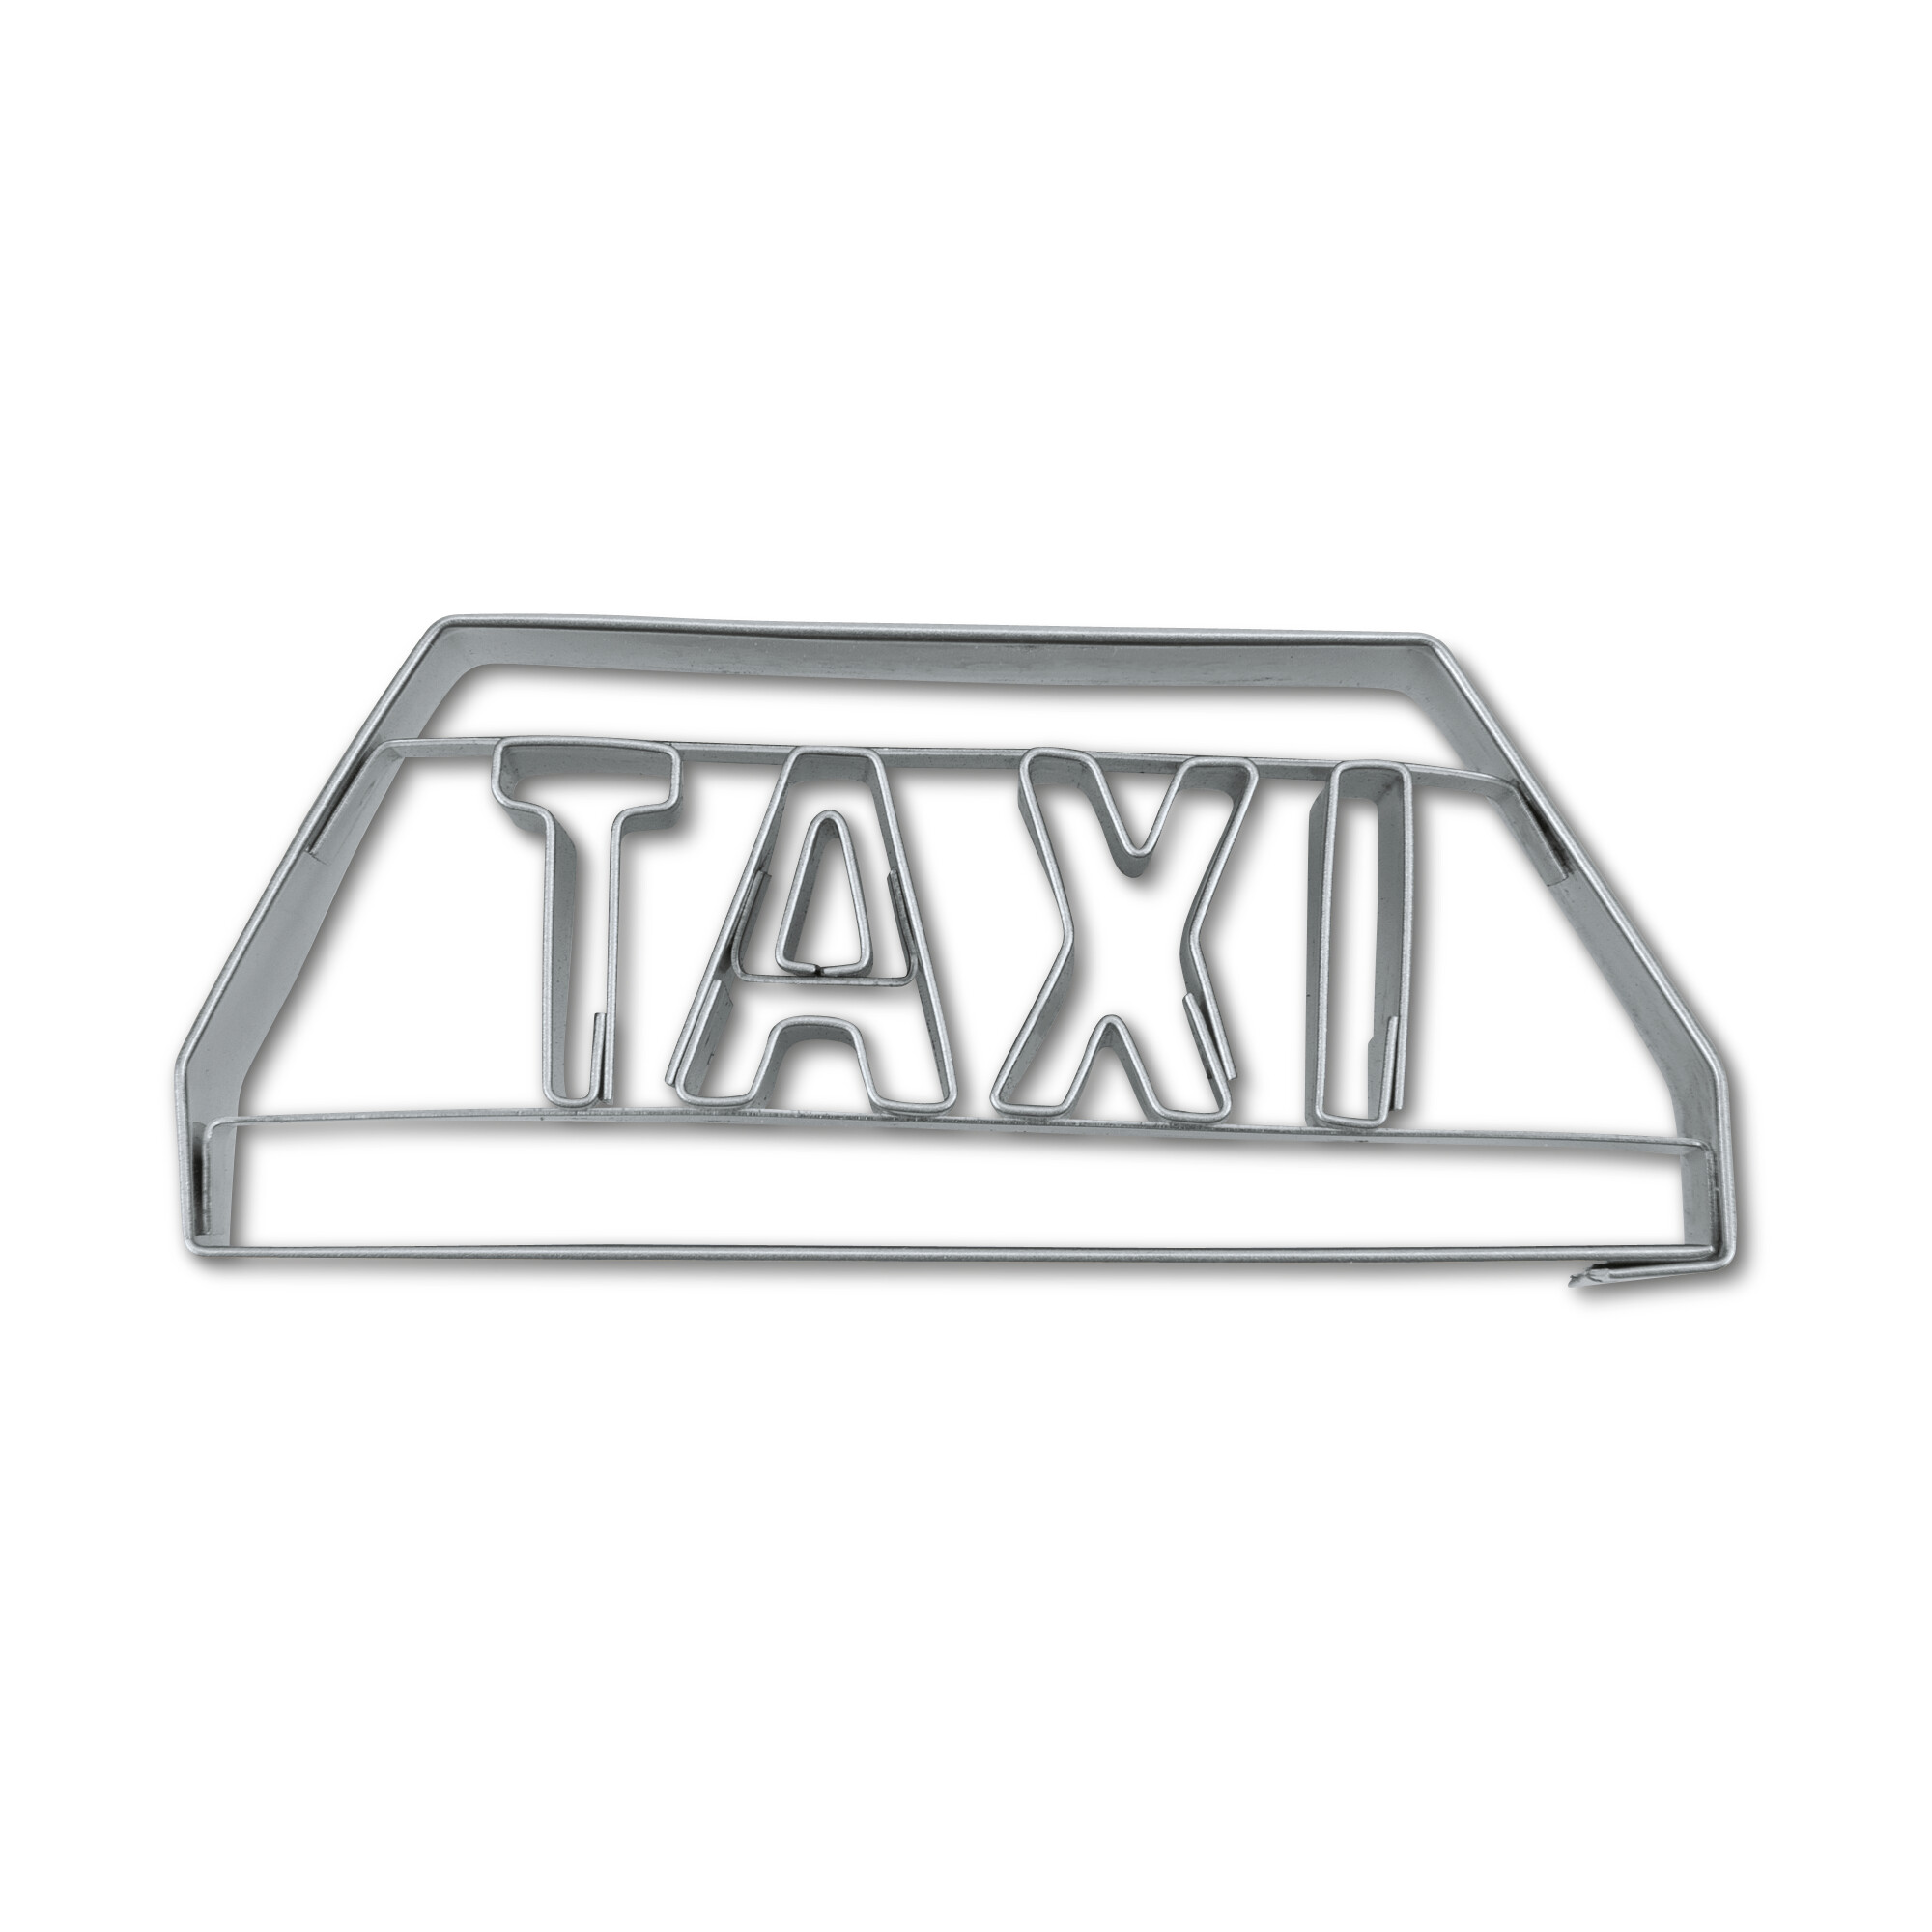 Präge-Ausstecher – Taxi